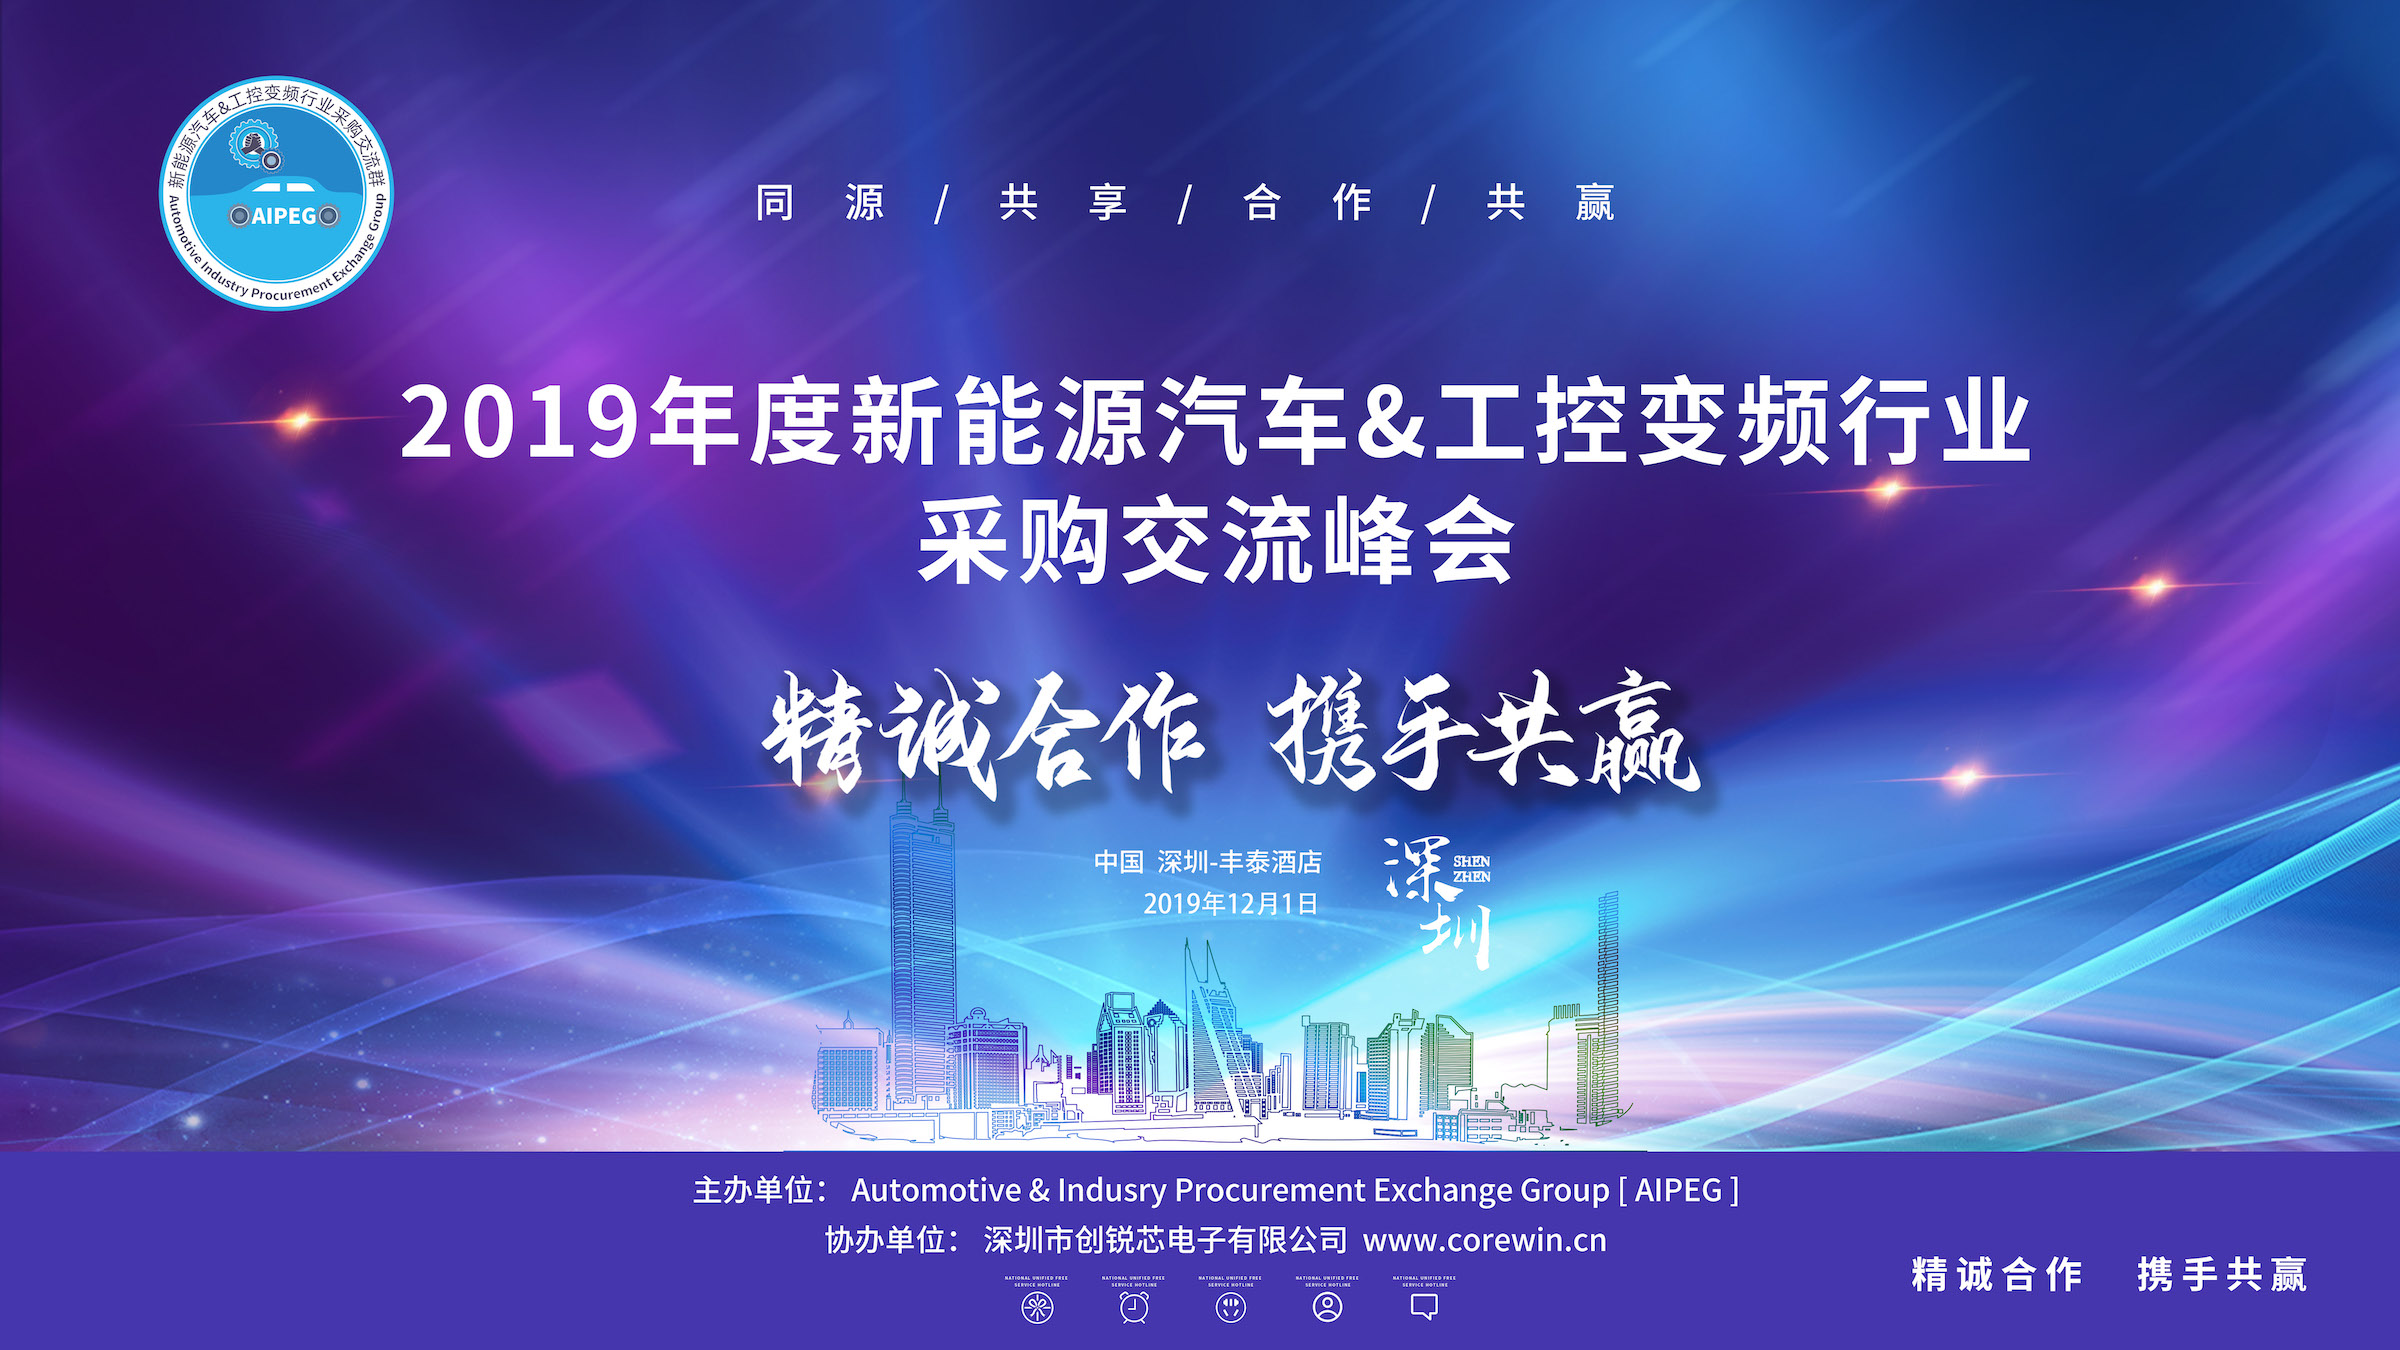 2019 年度新能源汽�e车&工控变频行业采购交流①峰会(AIPEG)日Ψ 前在深圳胜利召开。